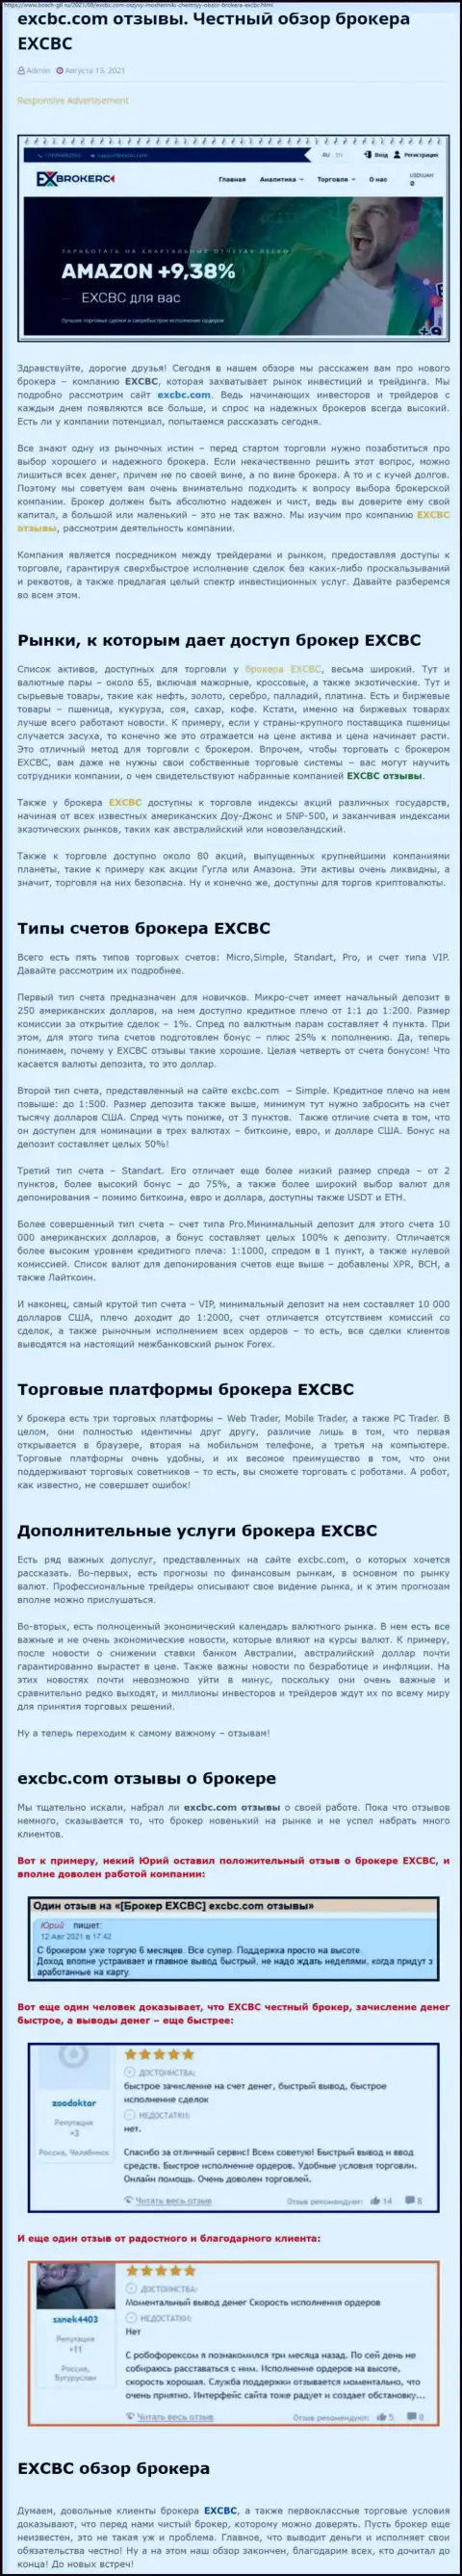 Обзорный материал о Форекс-организации EXCBC на информационном сервисе Бош-Глл Ру